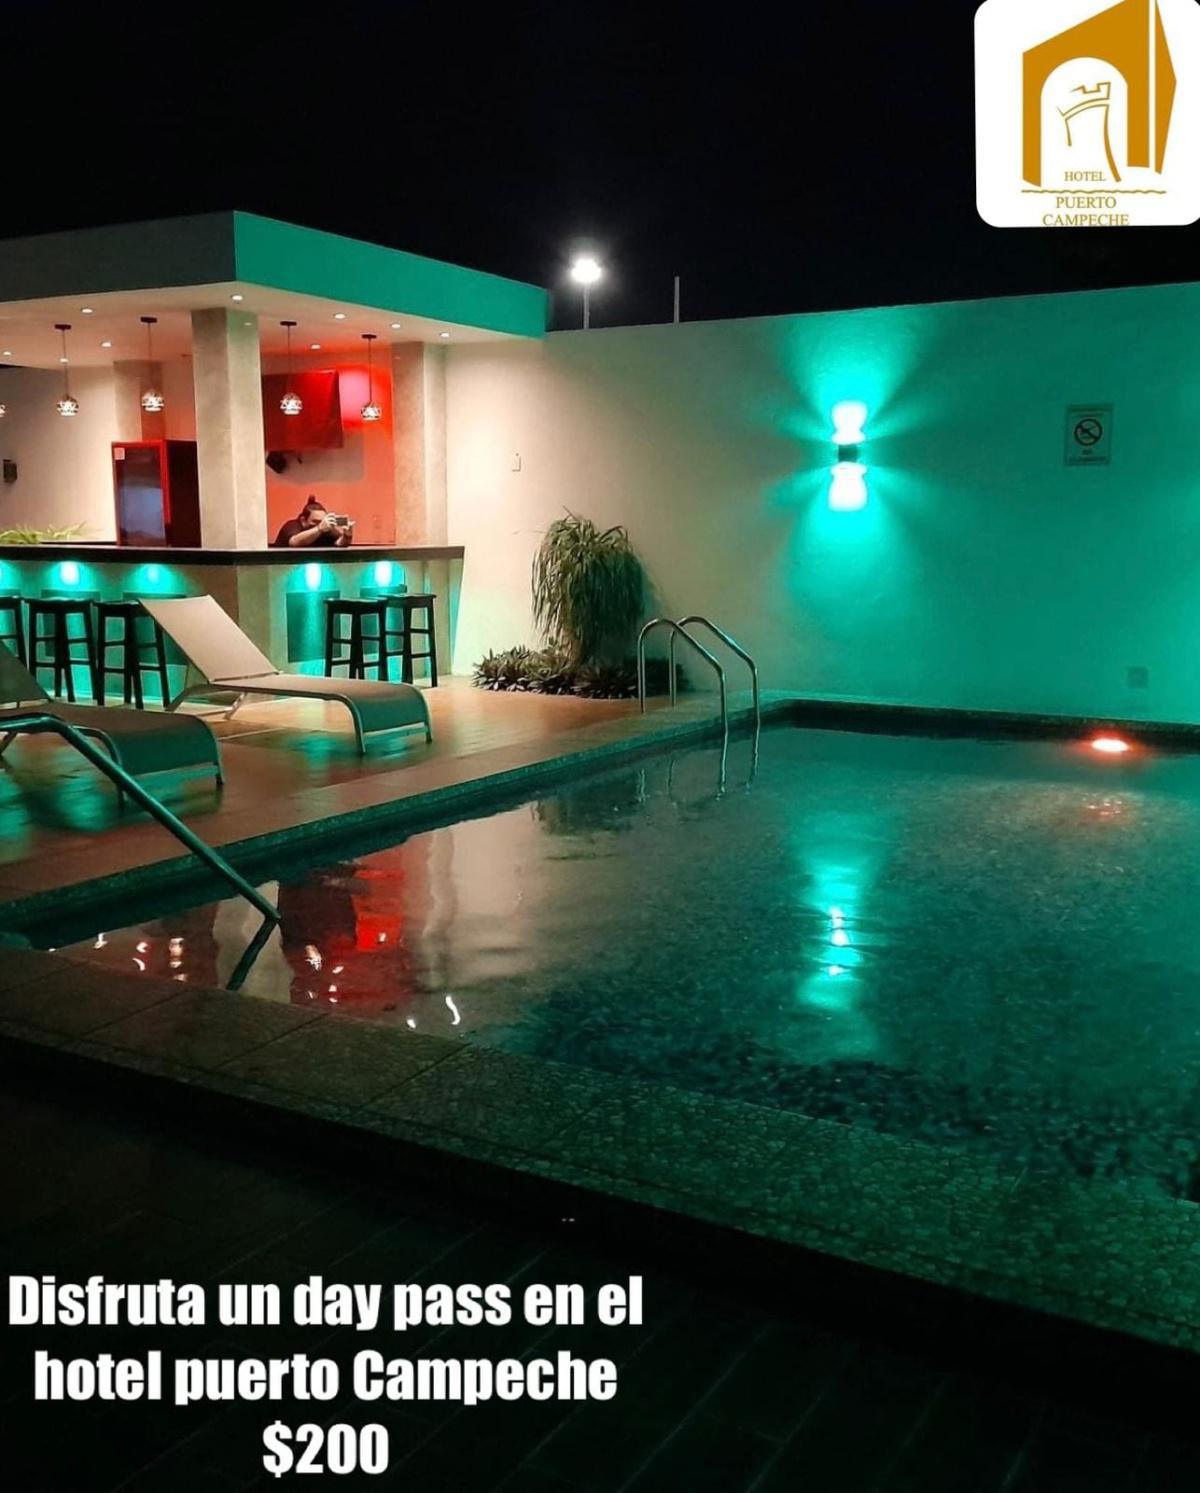 Hotel Puerto Campeche